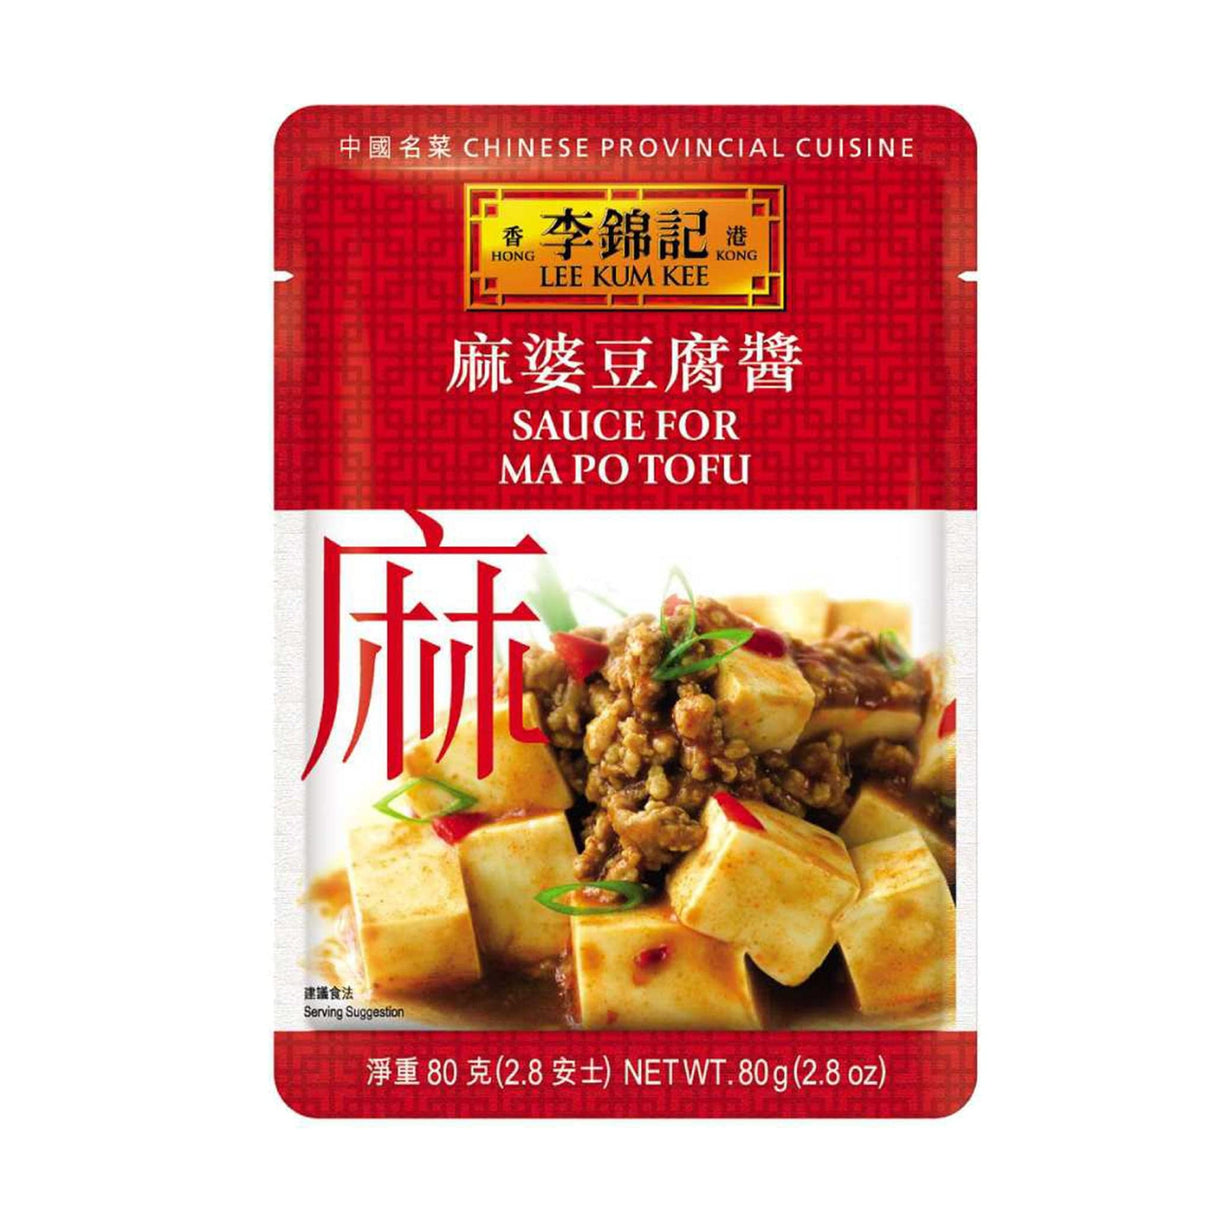 Lee Kum Kee Sauce For Ma Po Tofu